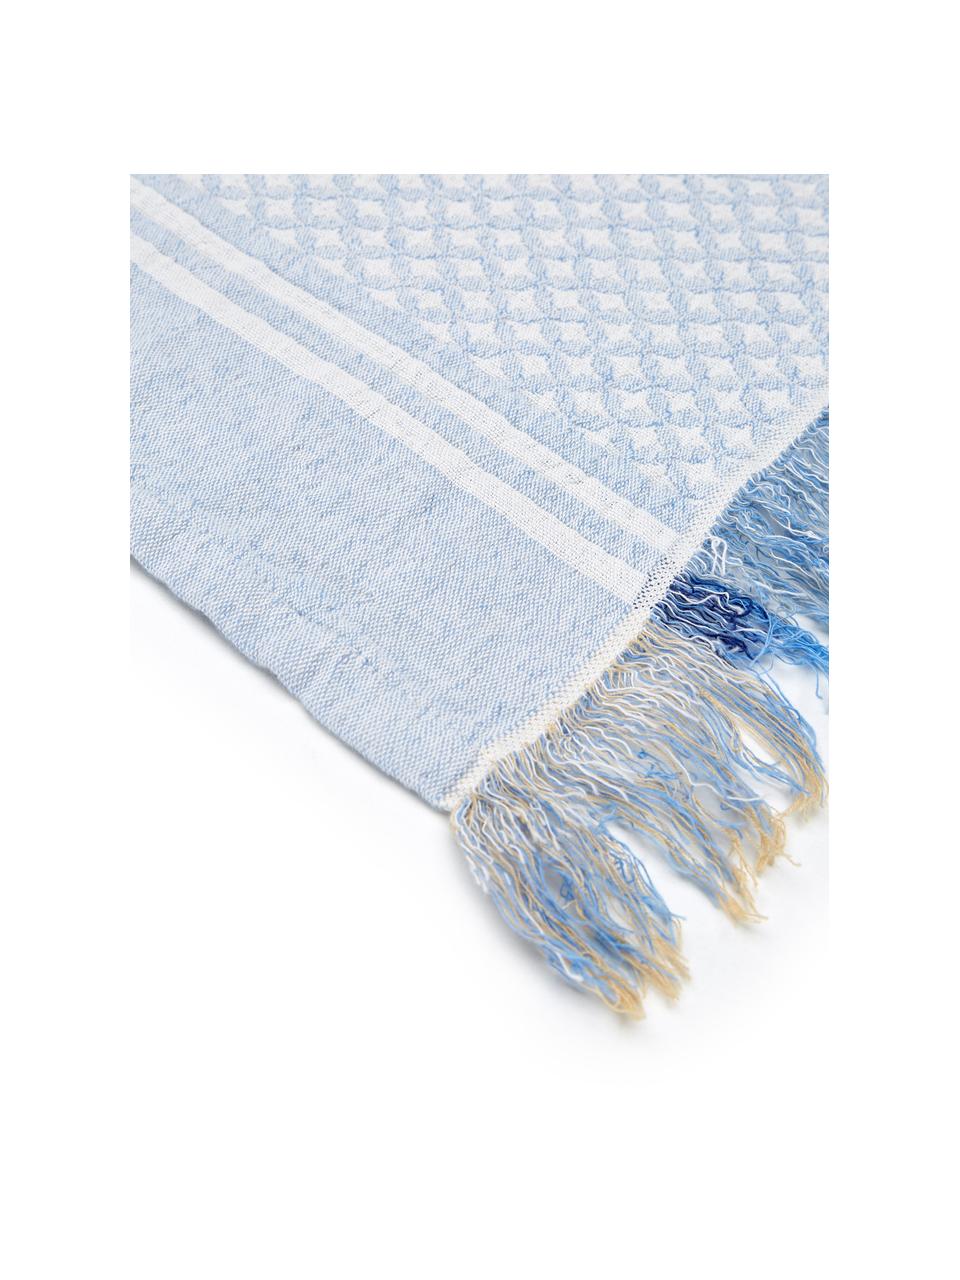 Gemusterte Tagesdecke Oglio, 100% Baumwolle, Blau, B 180 x L 235 cm (für Betten bis 140 x 200)